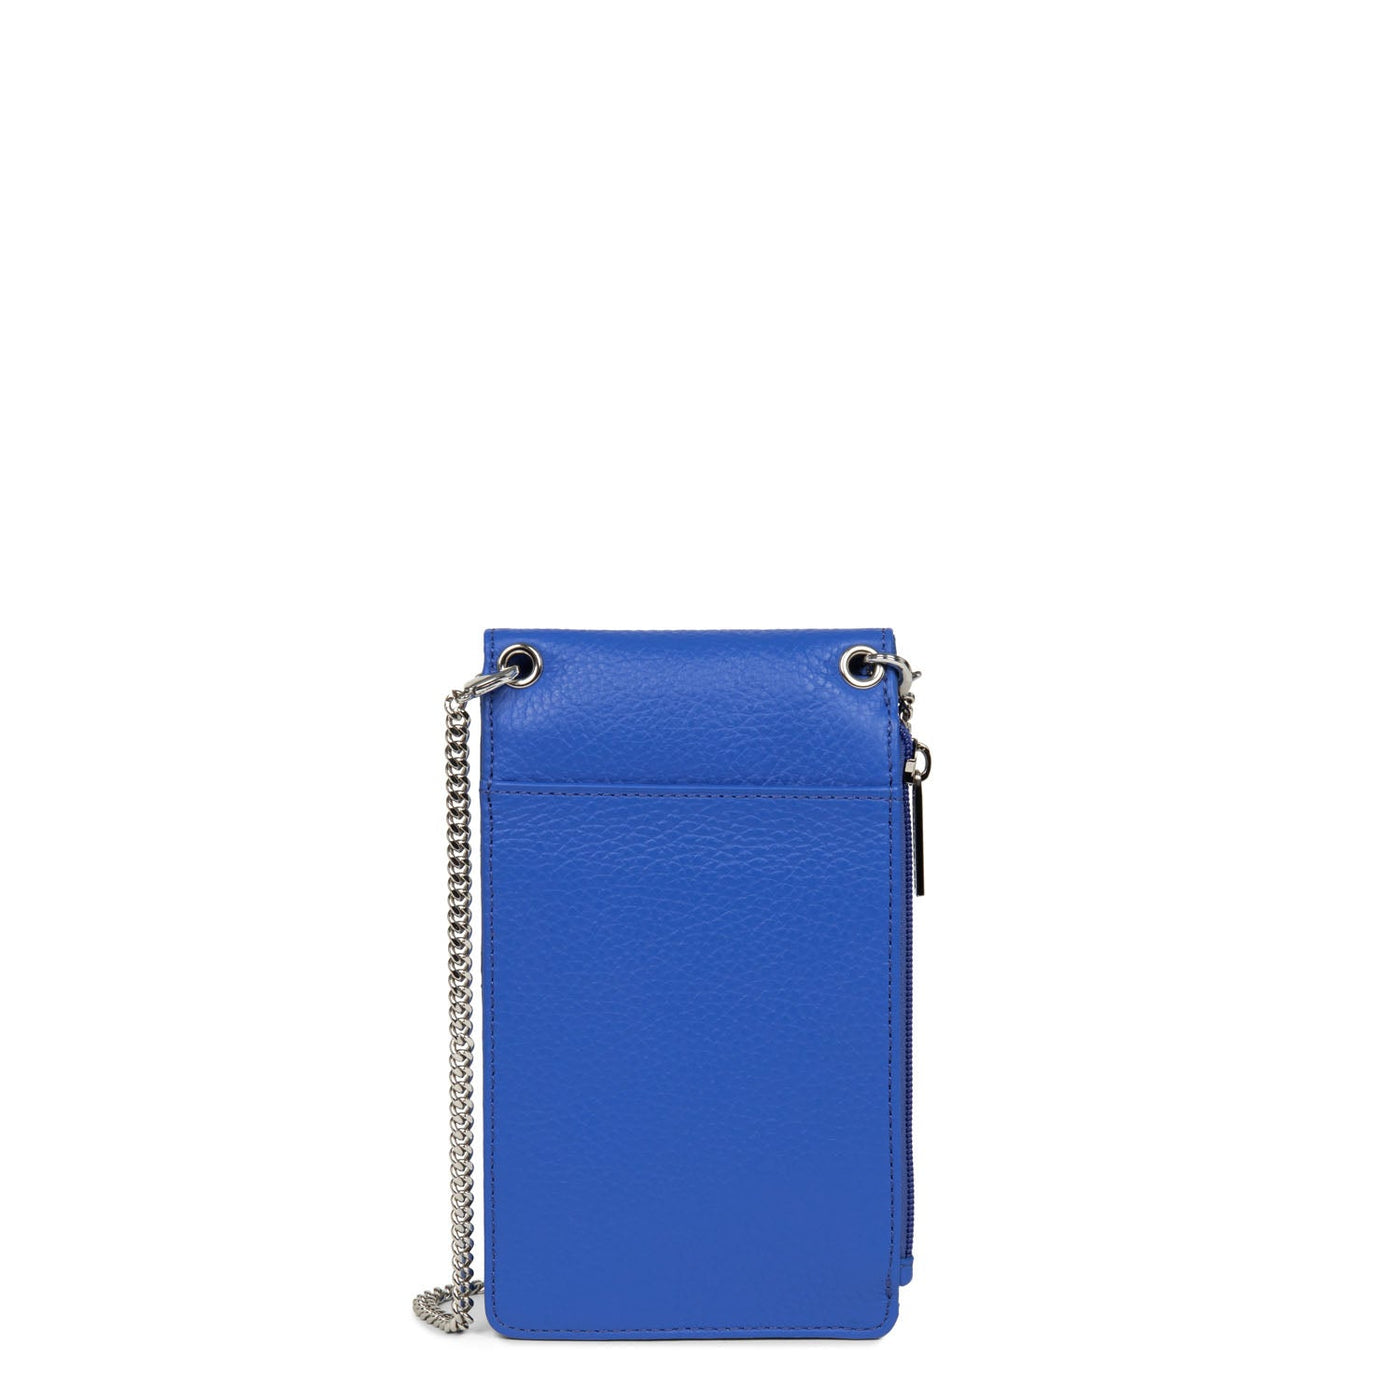 smartphone holder - foulonné pm #couleur_bleu-roi